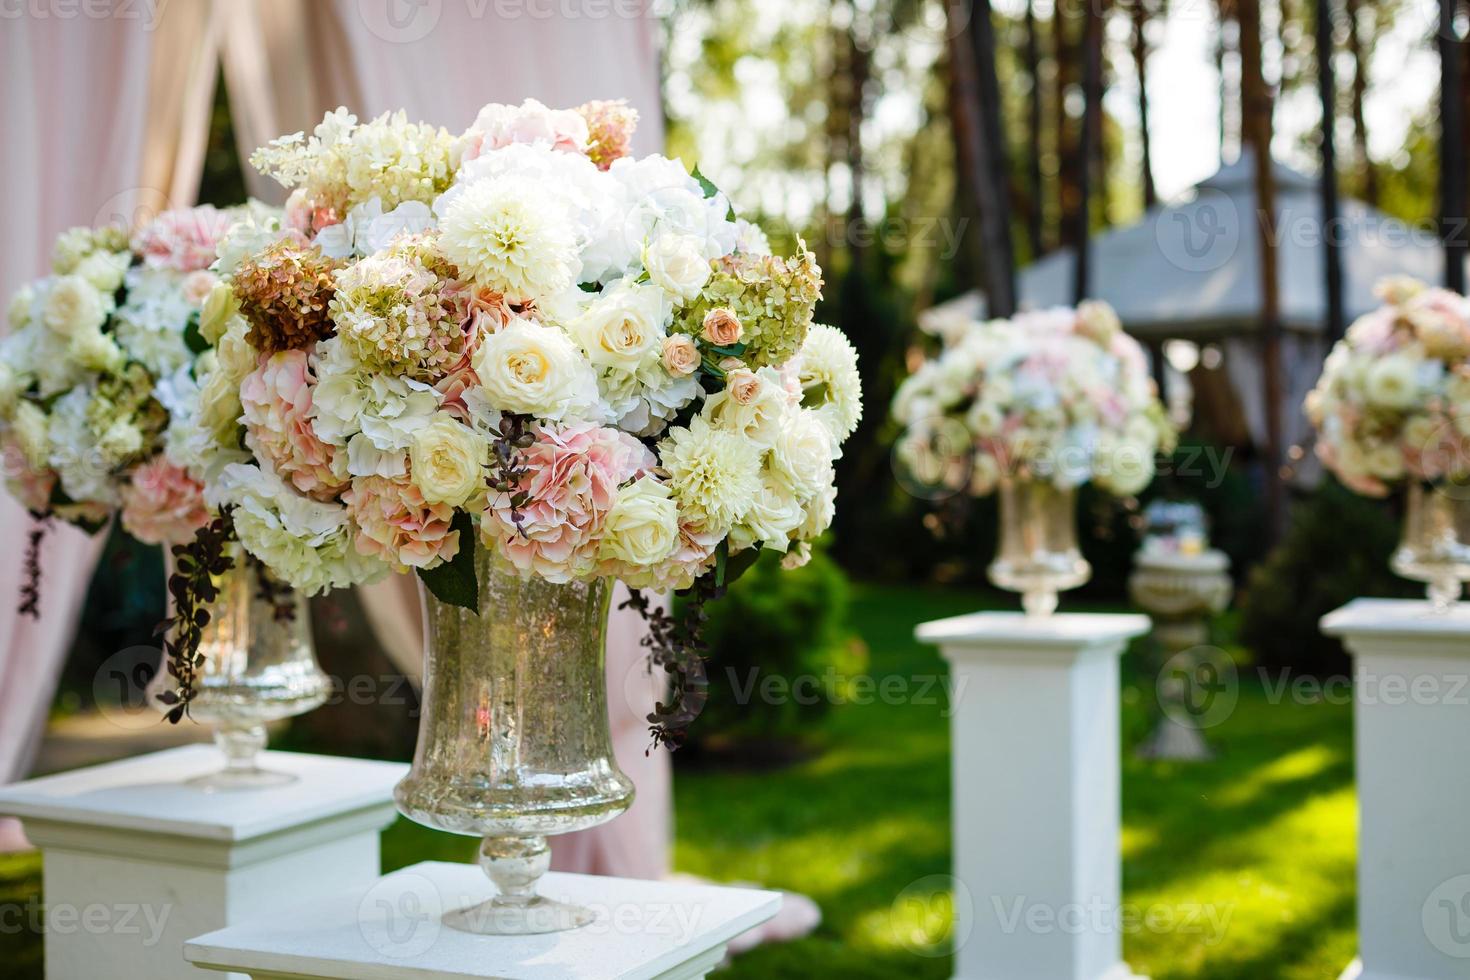 Hohe Kristallvase mit wunderschönem Blumenstrauß aus Gänseblümchen und Rosen darauf foto